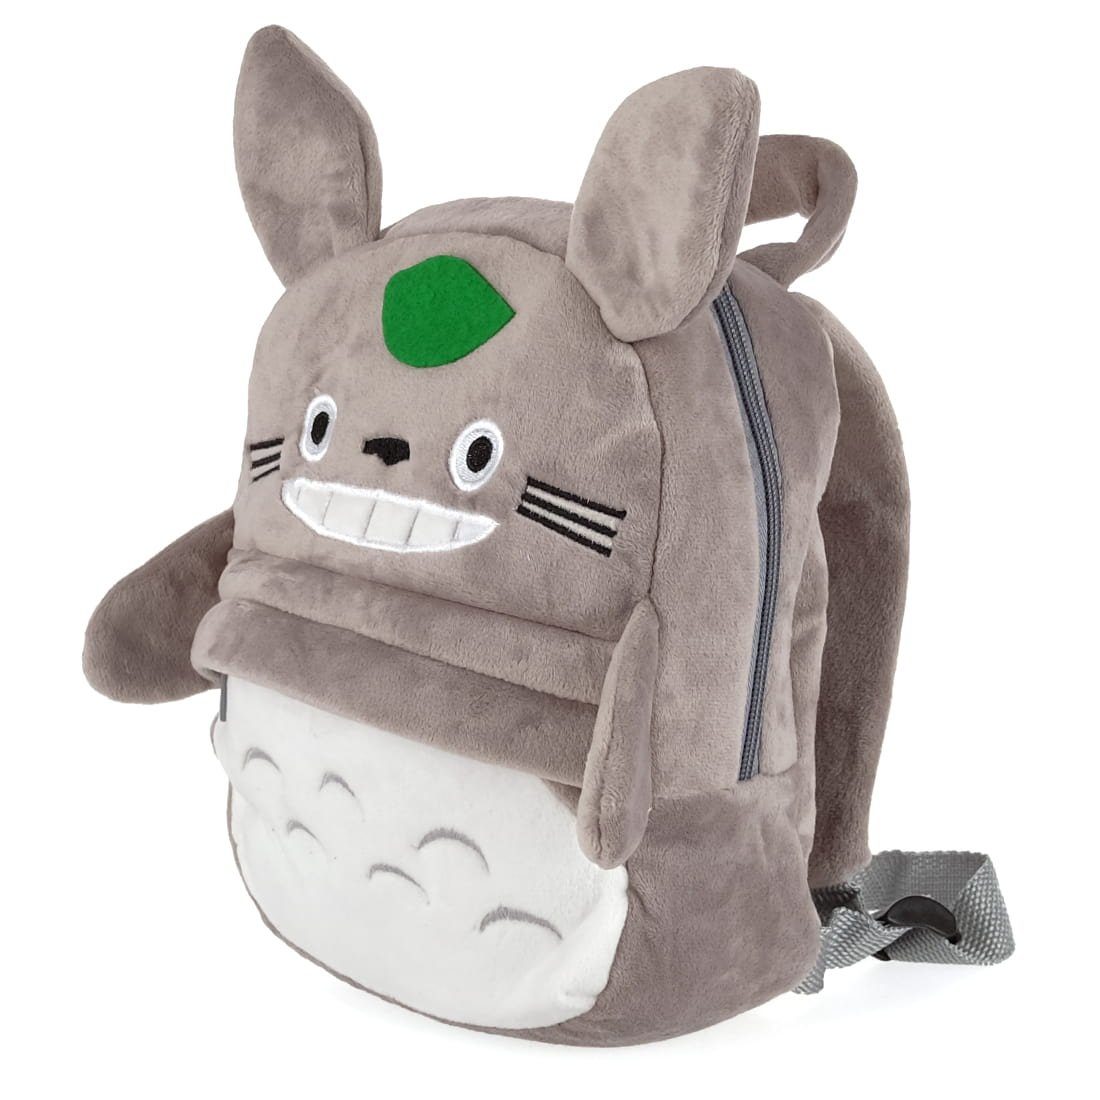 für Fans Totoro Rucksack Rucksack in Kinder Plüsch, Daypack GalaxyCat kleine aus Form Totoro weichem Kinder